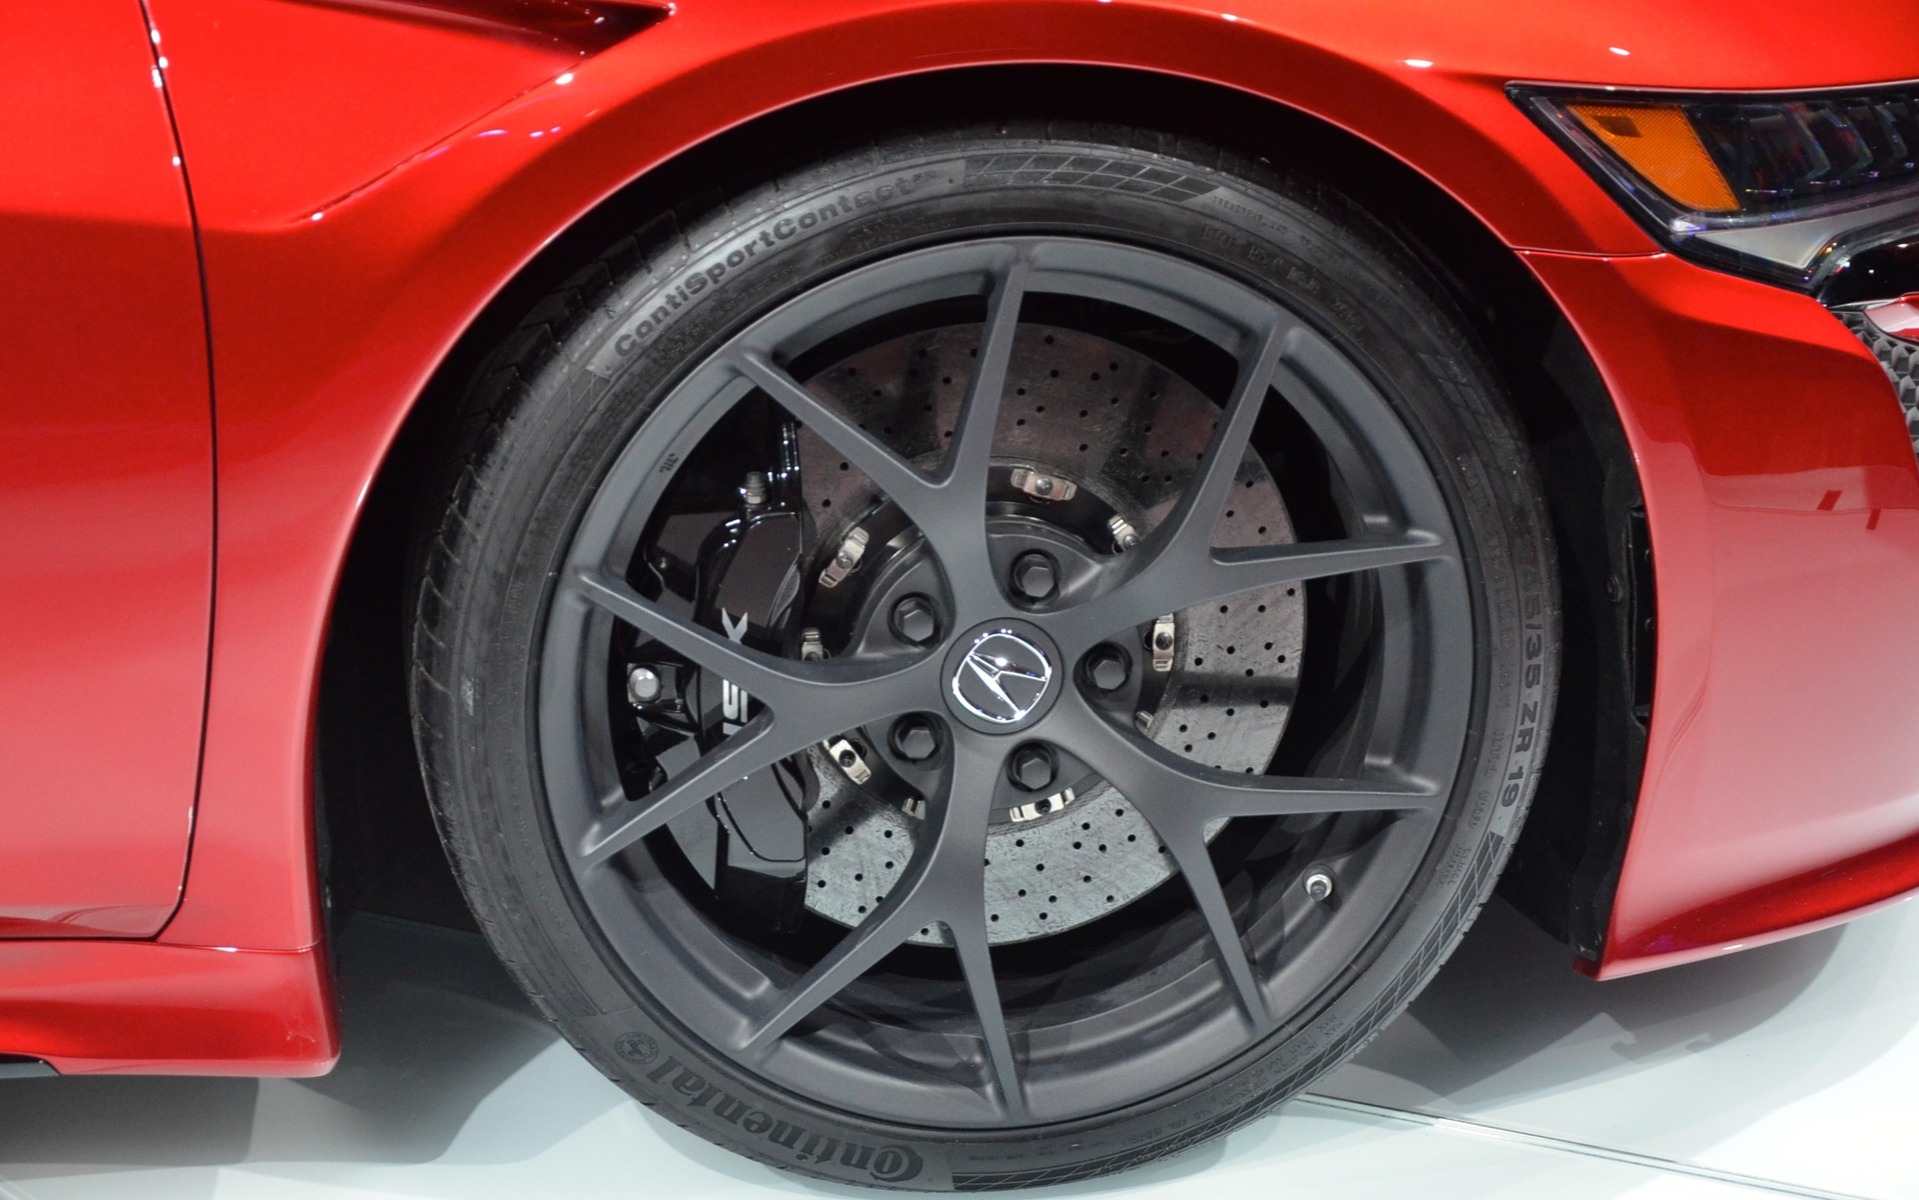 Acura NSX - Carbon-ceramic brakes.